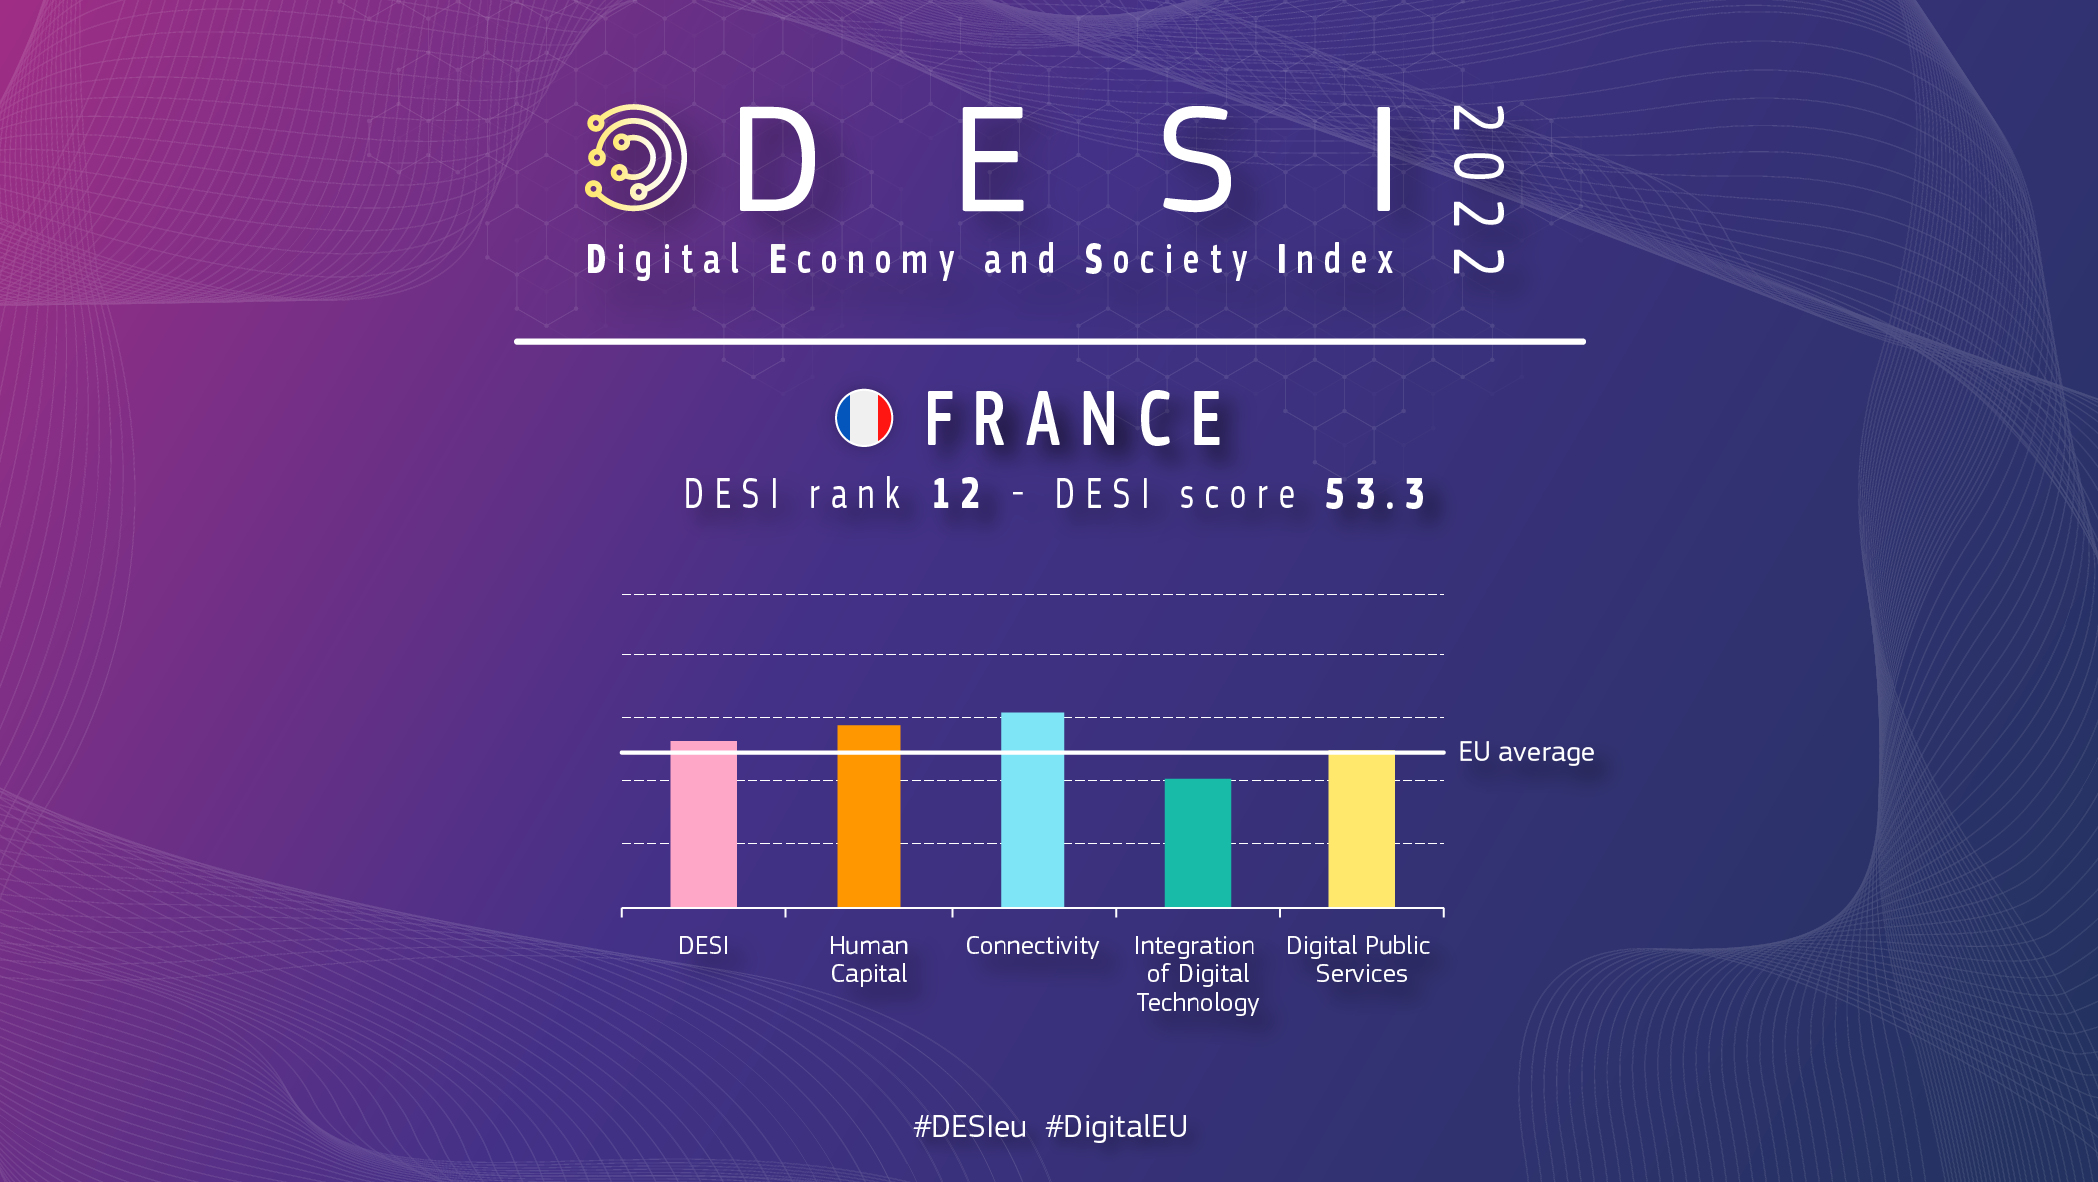 Grafisk oversigt over Frankrig i DESI, der viser en placering på 12 og en score på 53.3